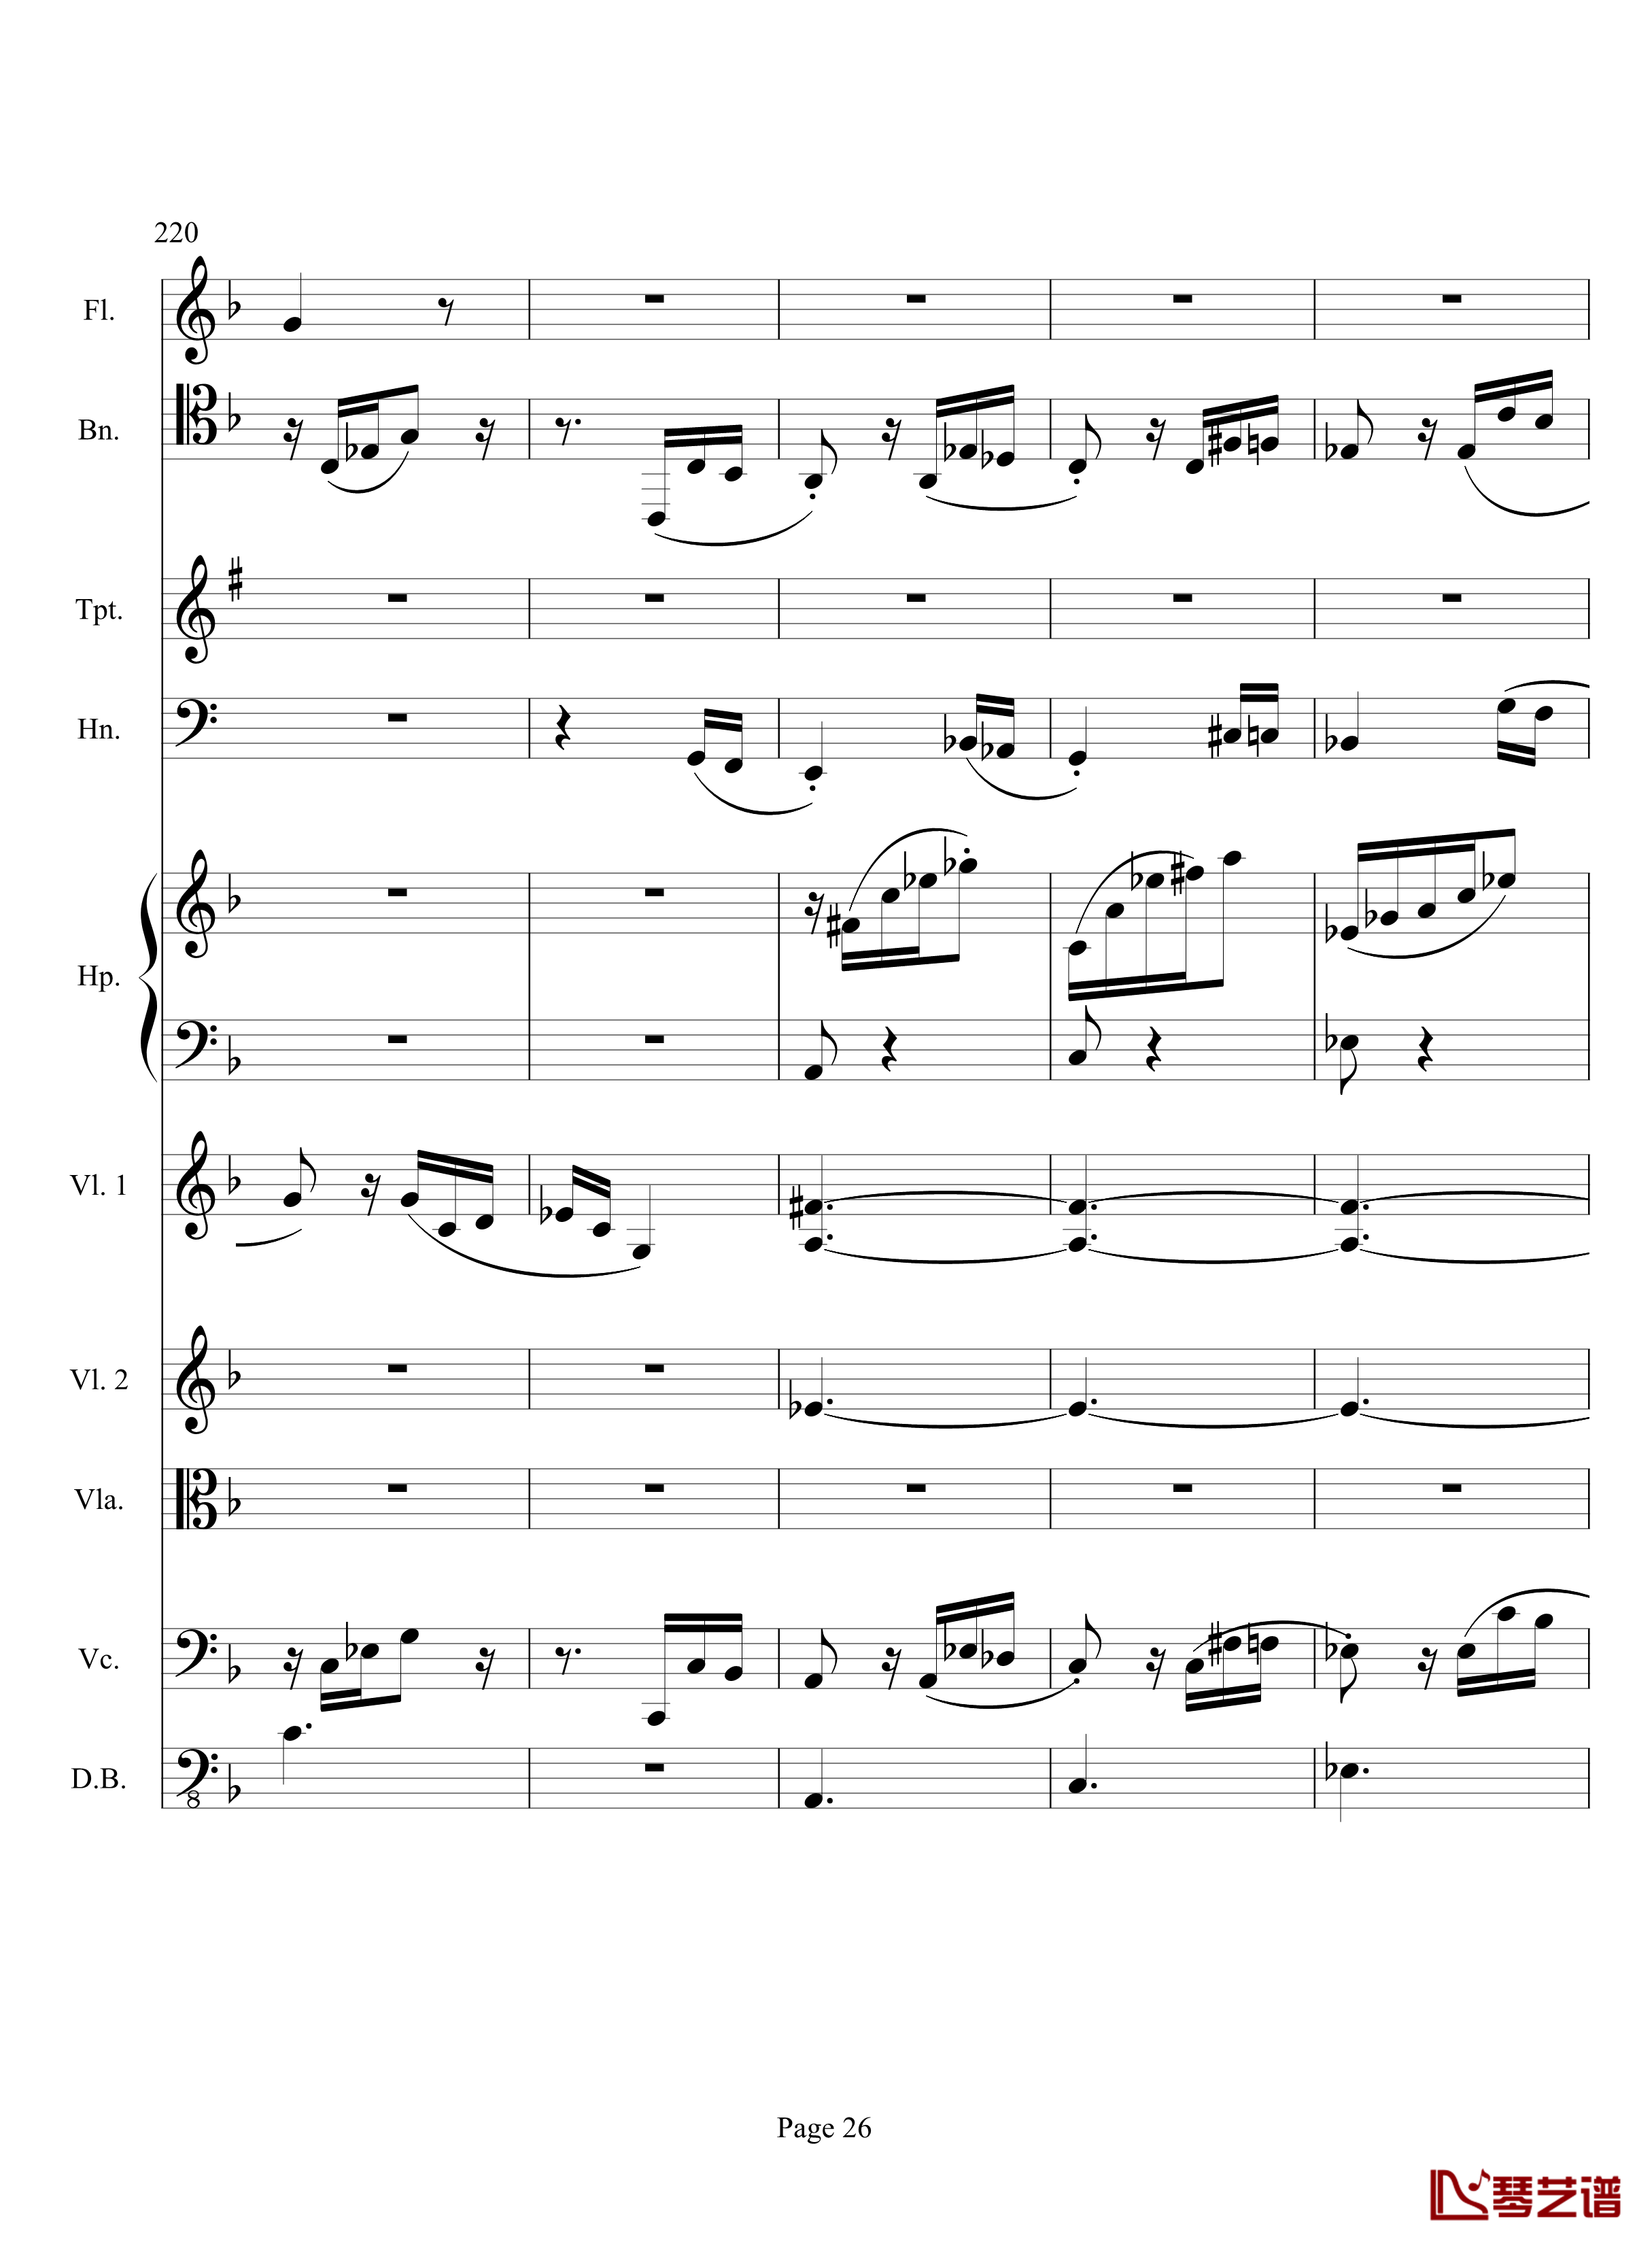 奏鸣曲之交响钢琴谱-第17首-Ⅲ-贝多芬-beethoven26